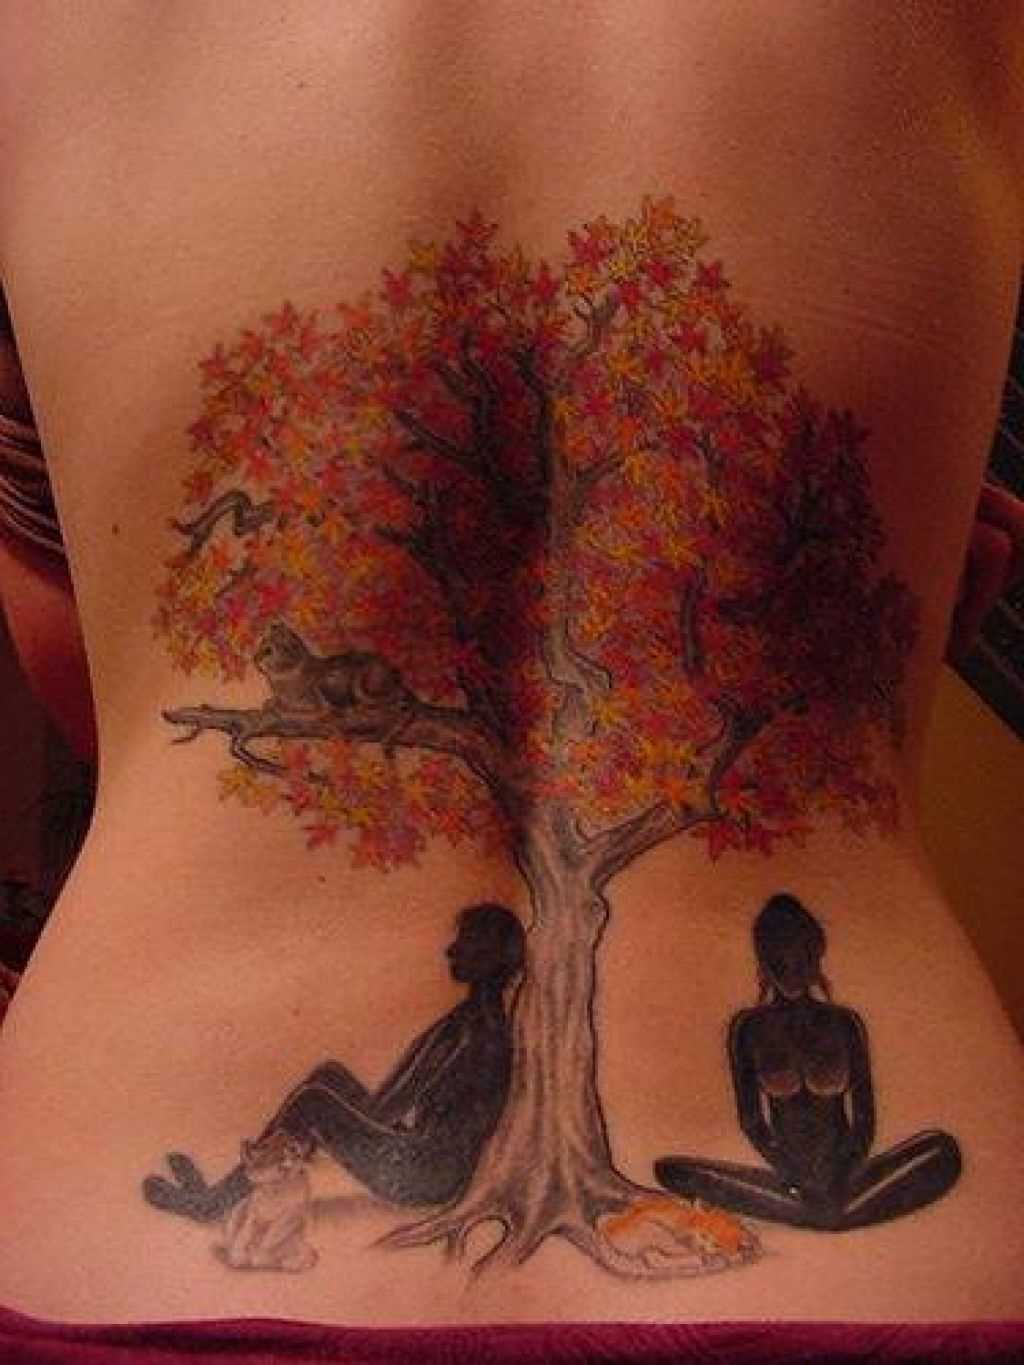 Tatuagem nas costas de uma menina em forma de árvore com as pessoas